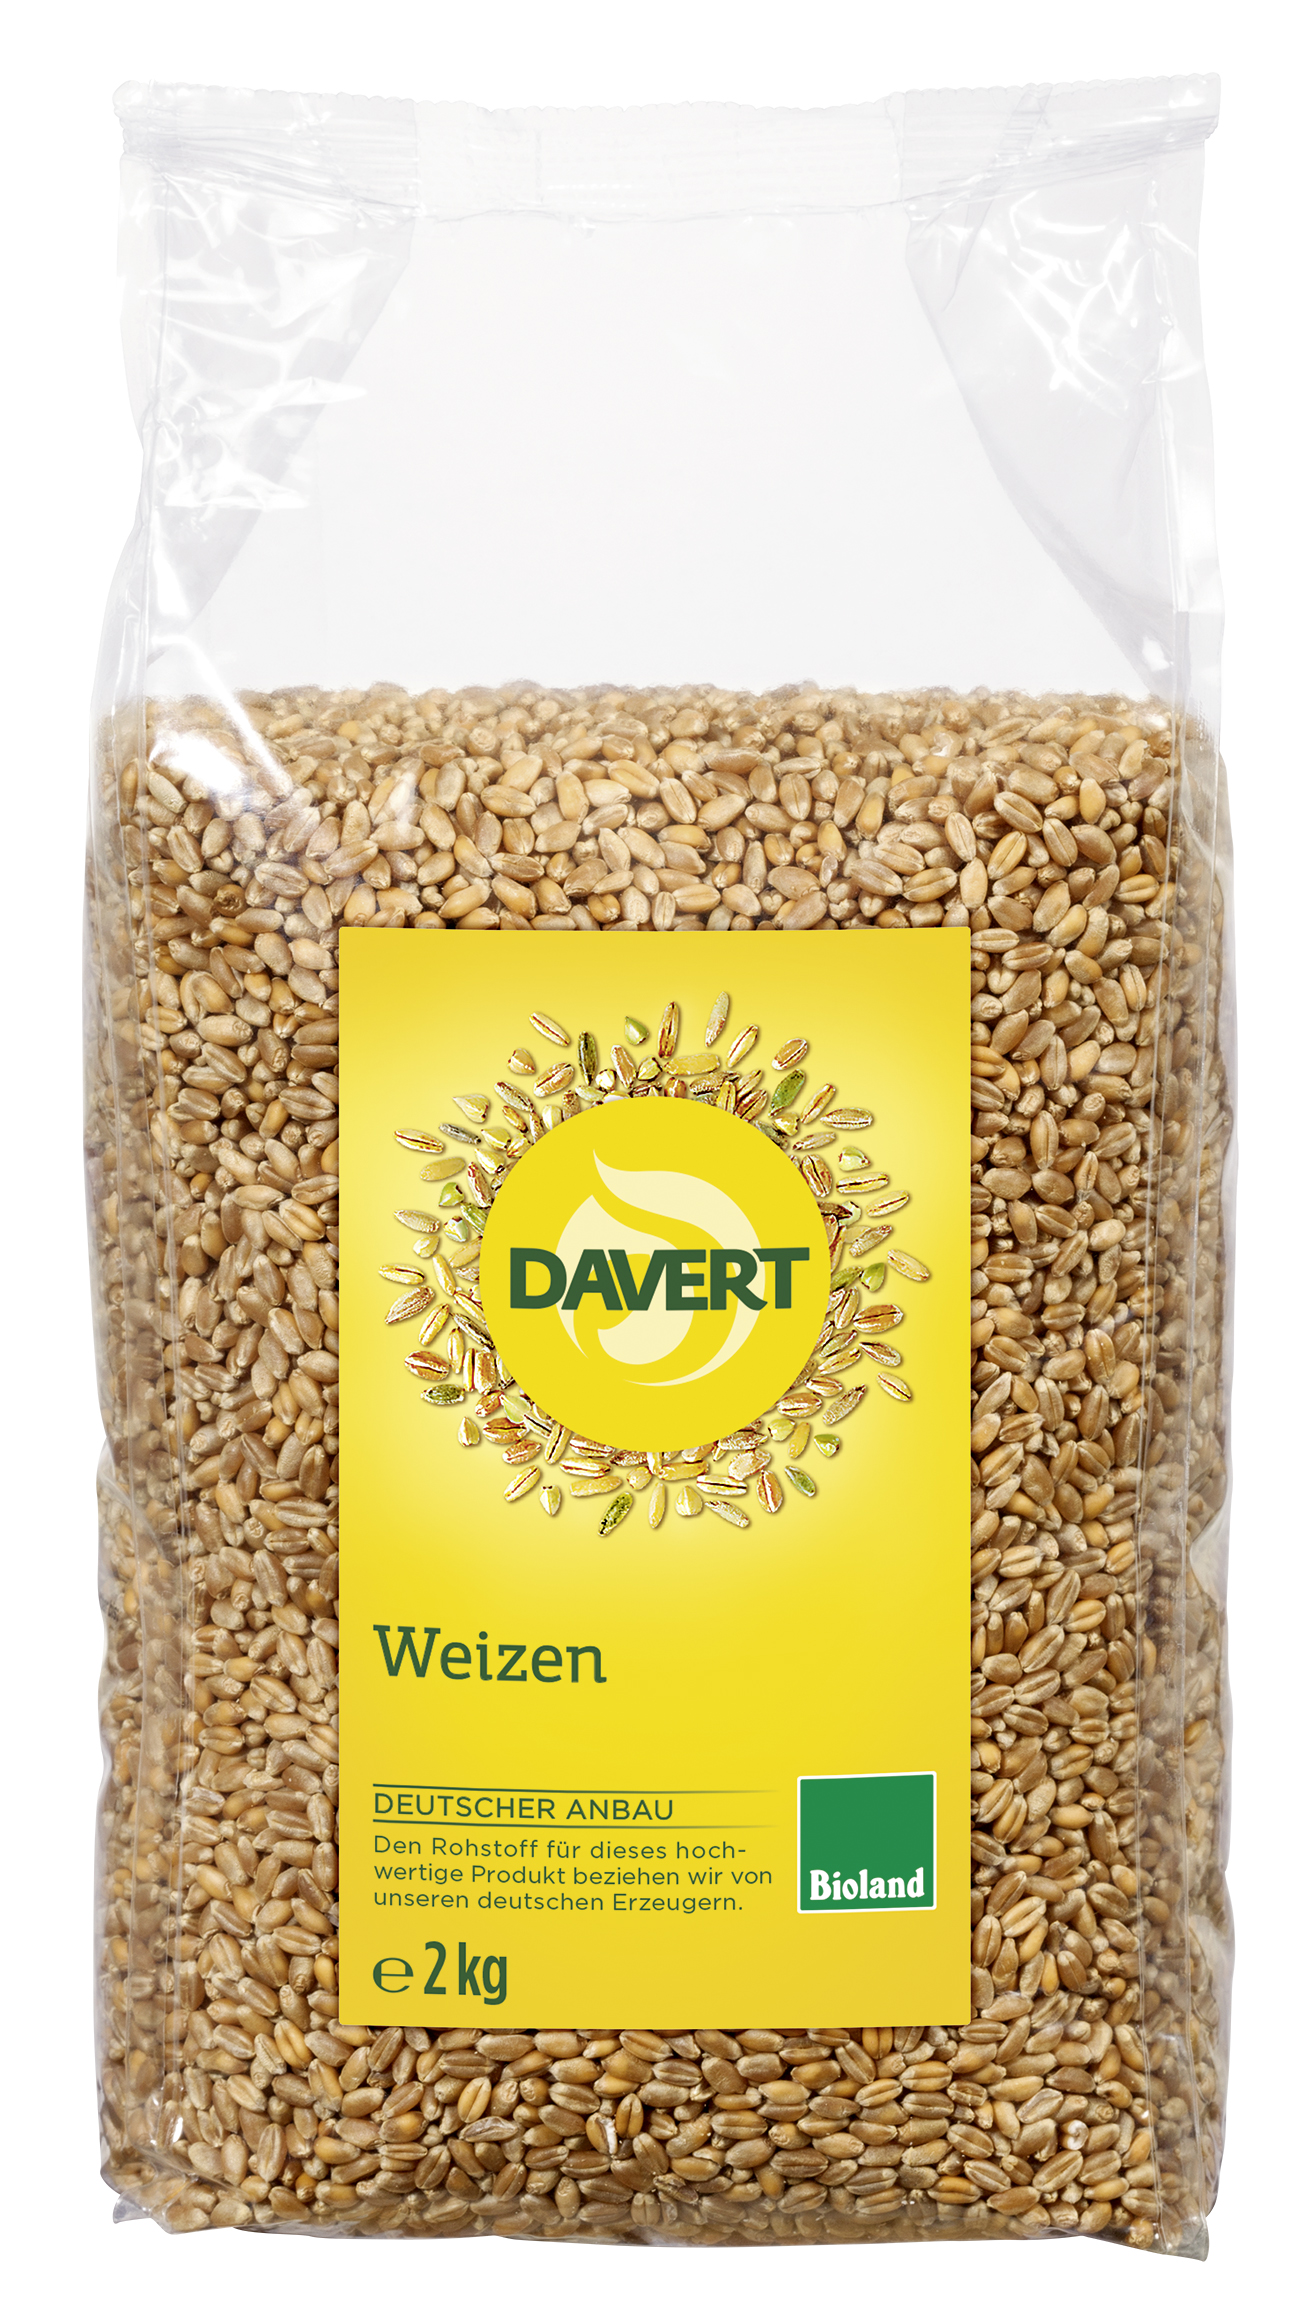 Weizen Bioland, Shop im Bio Davert 2kg Produkte | Online-Shop | Produkte | Alle | Naturkost